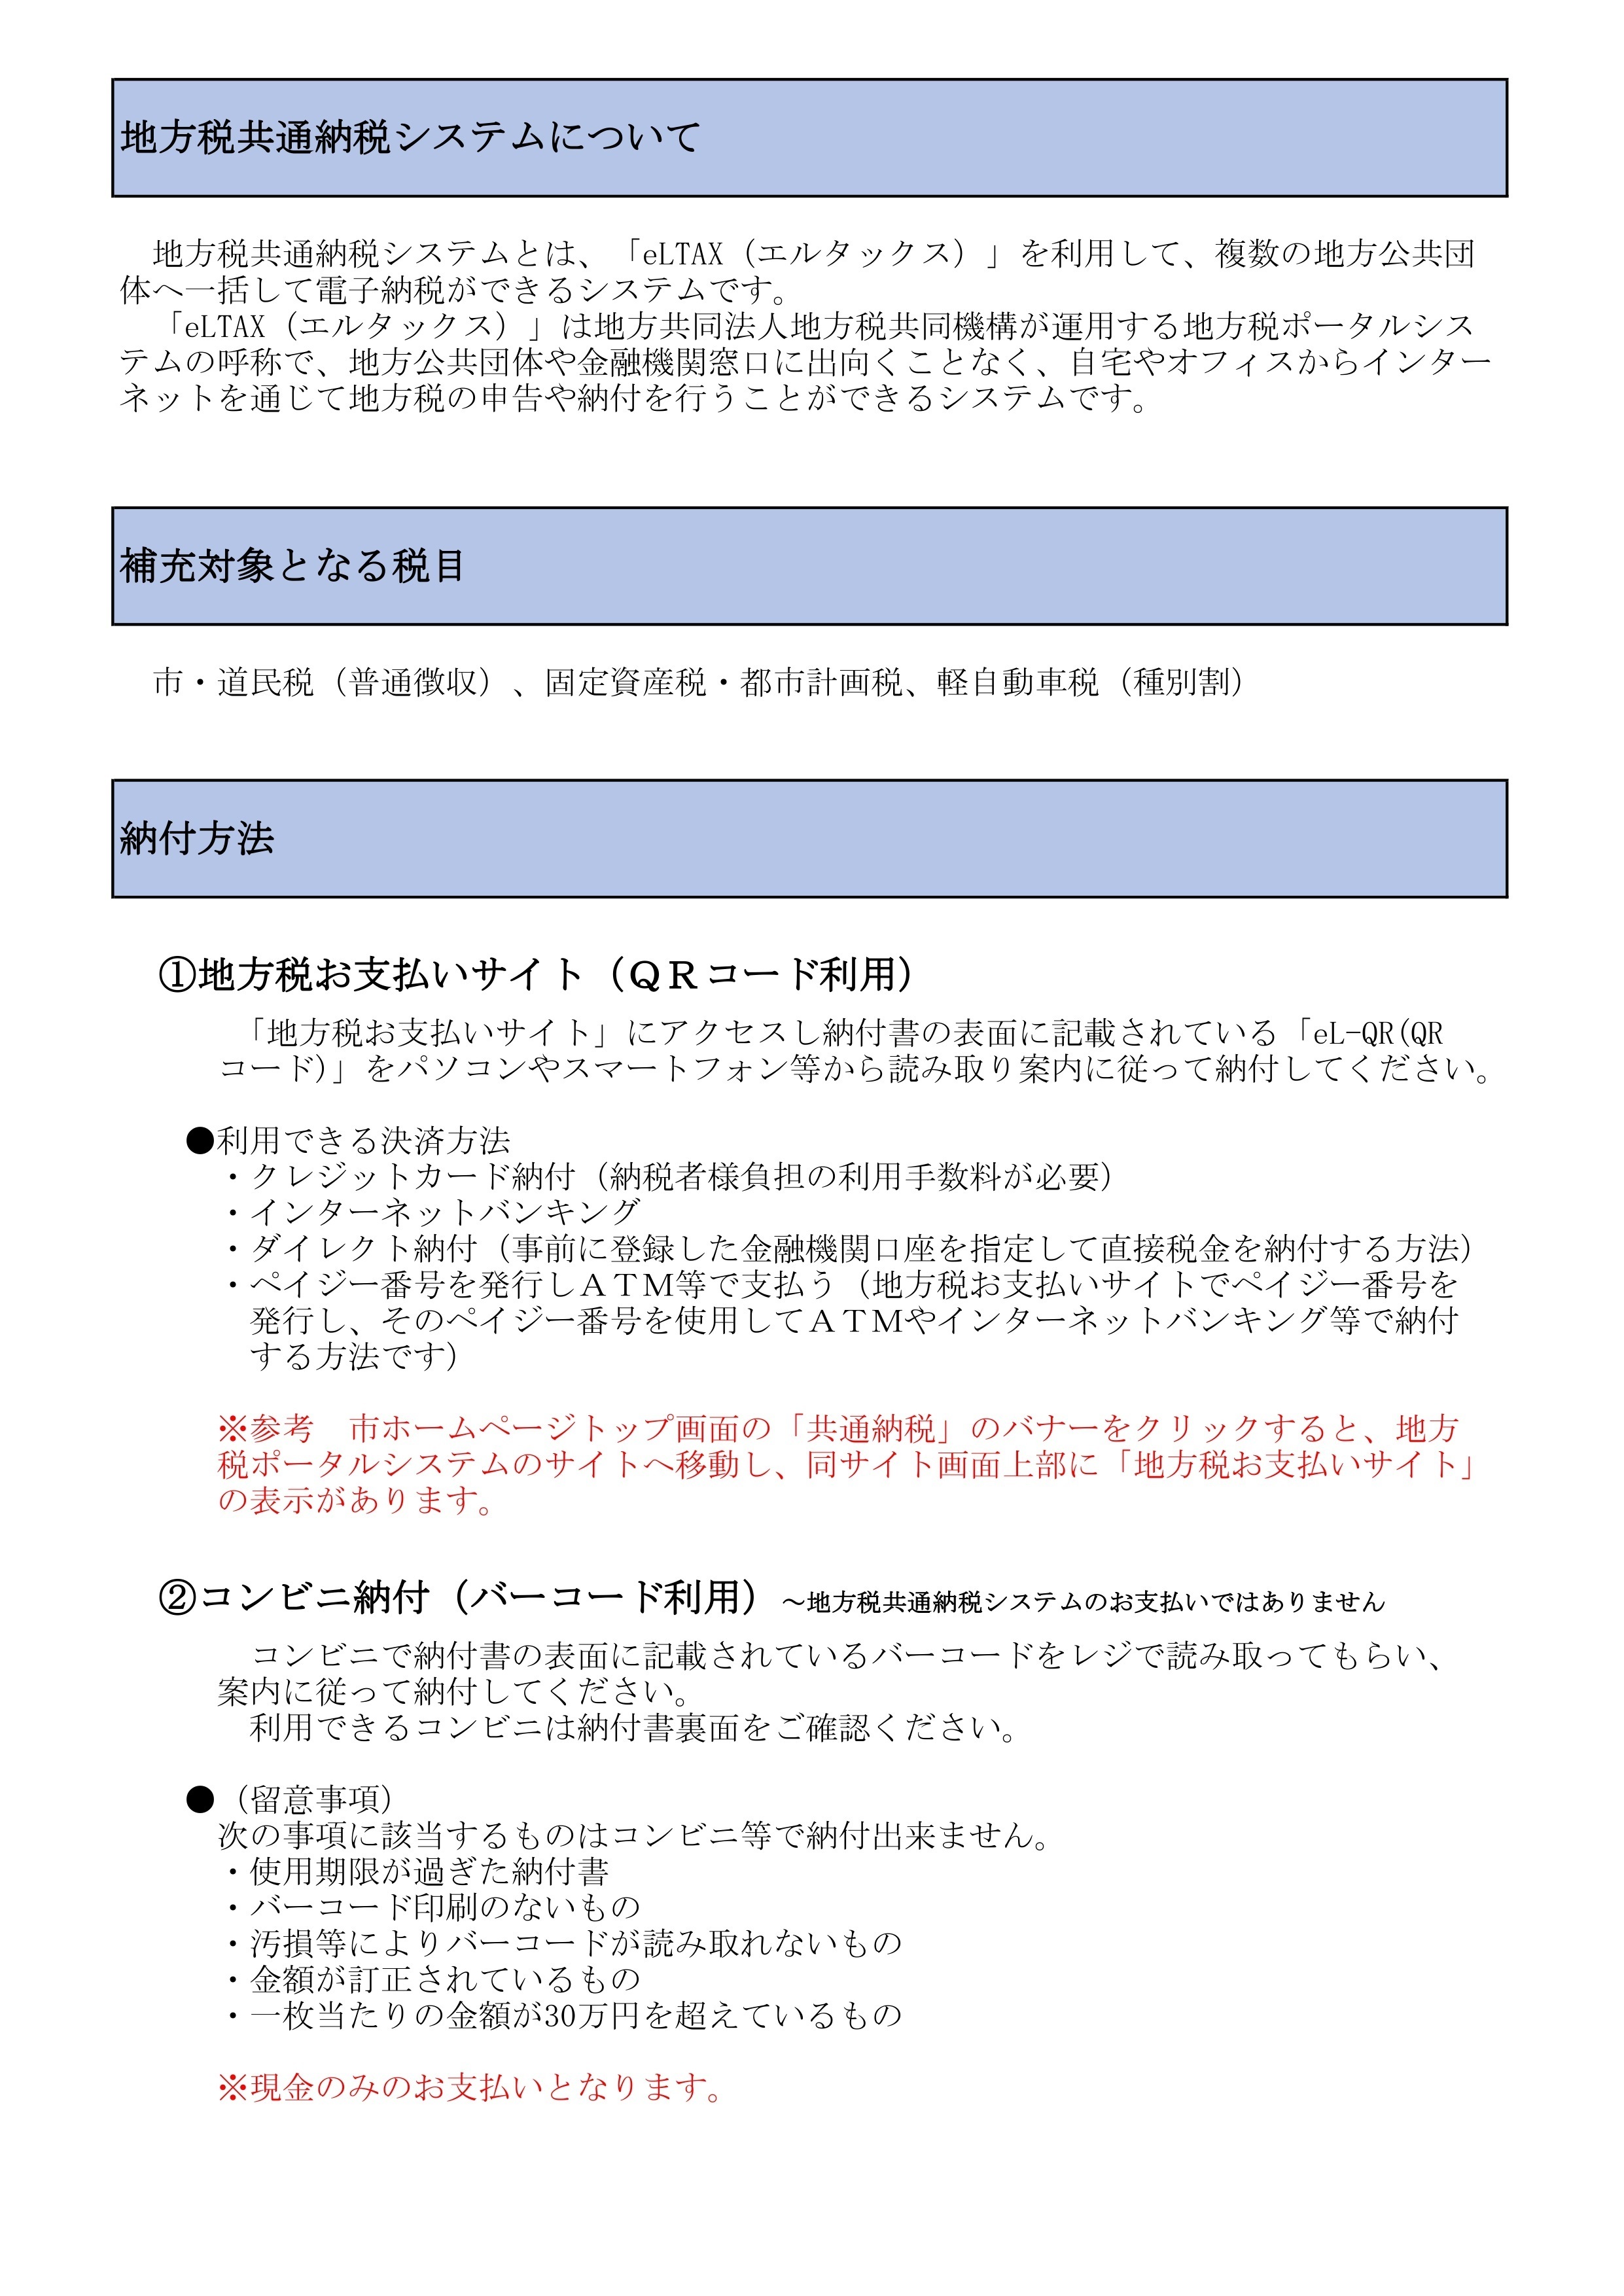 共通納税・コンビニ収納広報・HP用2-3_page-0001.jpg